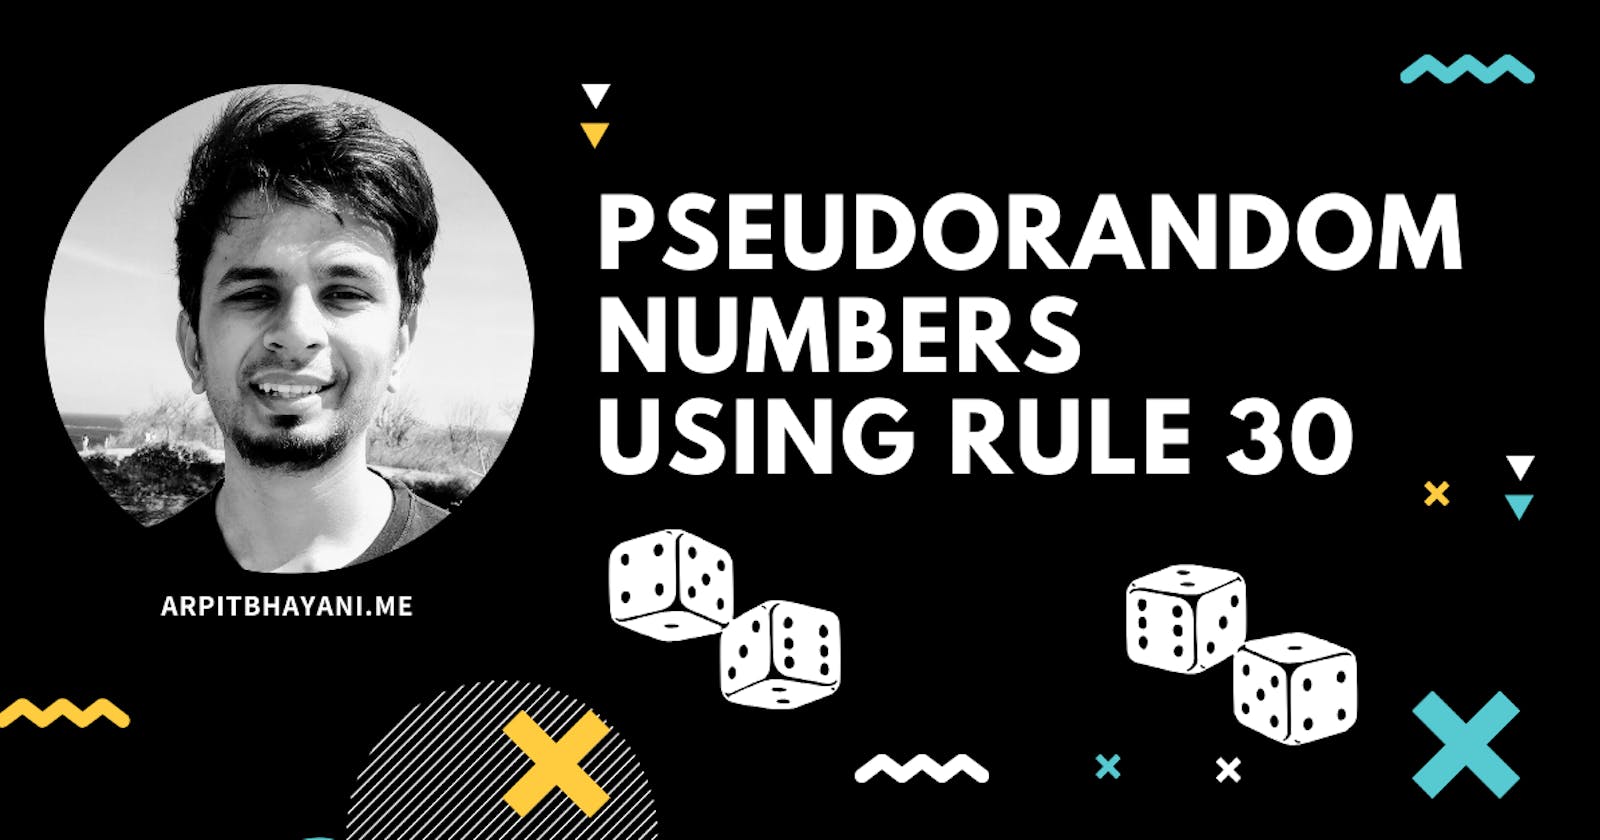 Pseudorandom numbers using Rule 30